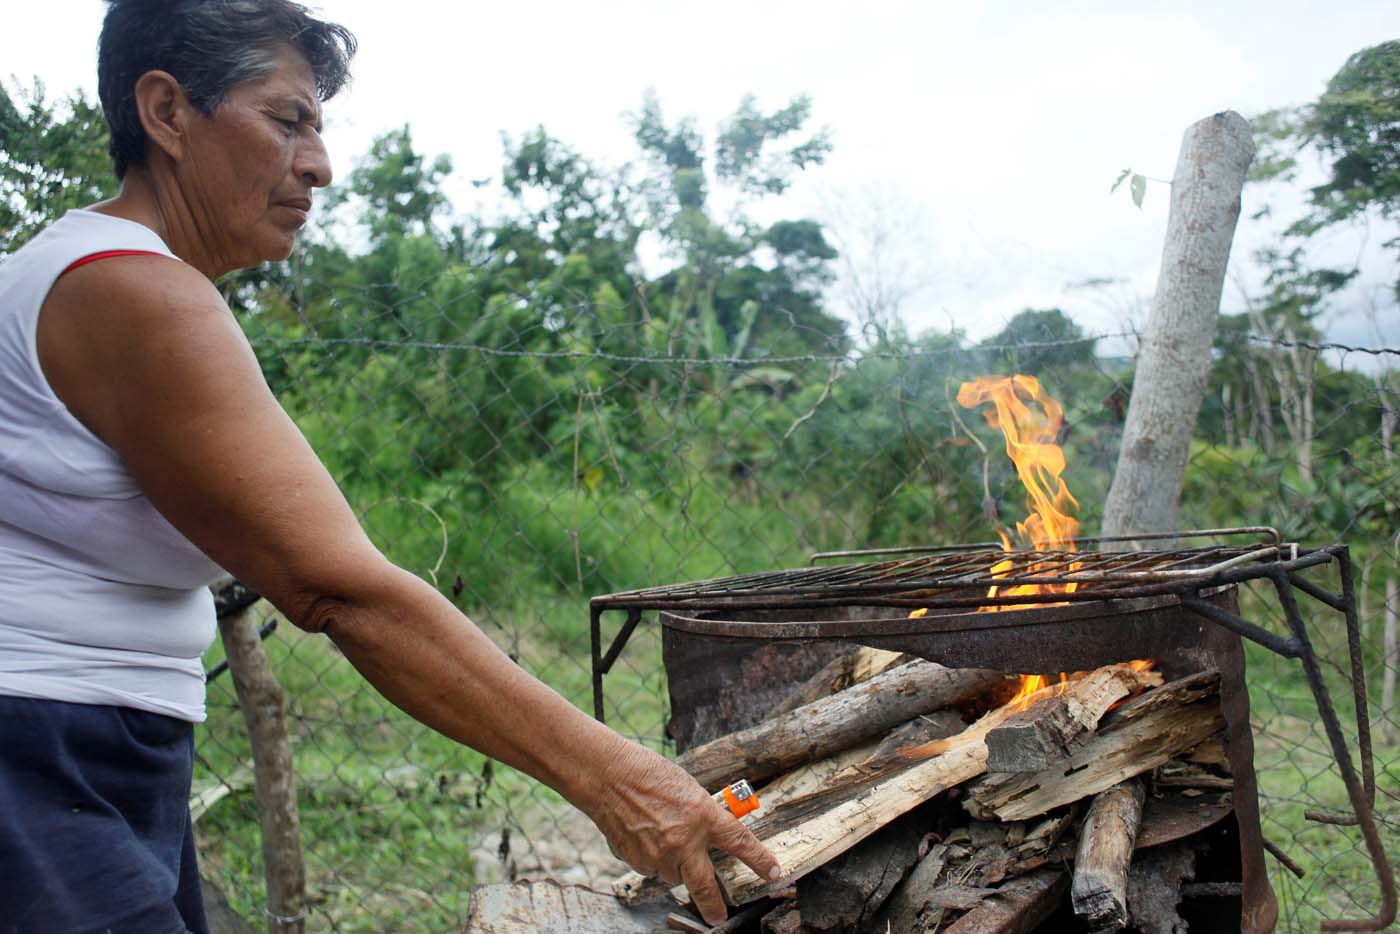 Revolución chucuta: Escasez de gas doméstico obliga a venezolanos a cocinar con leña (fotos)